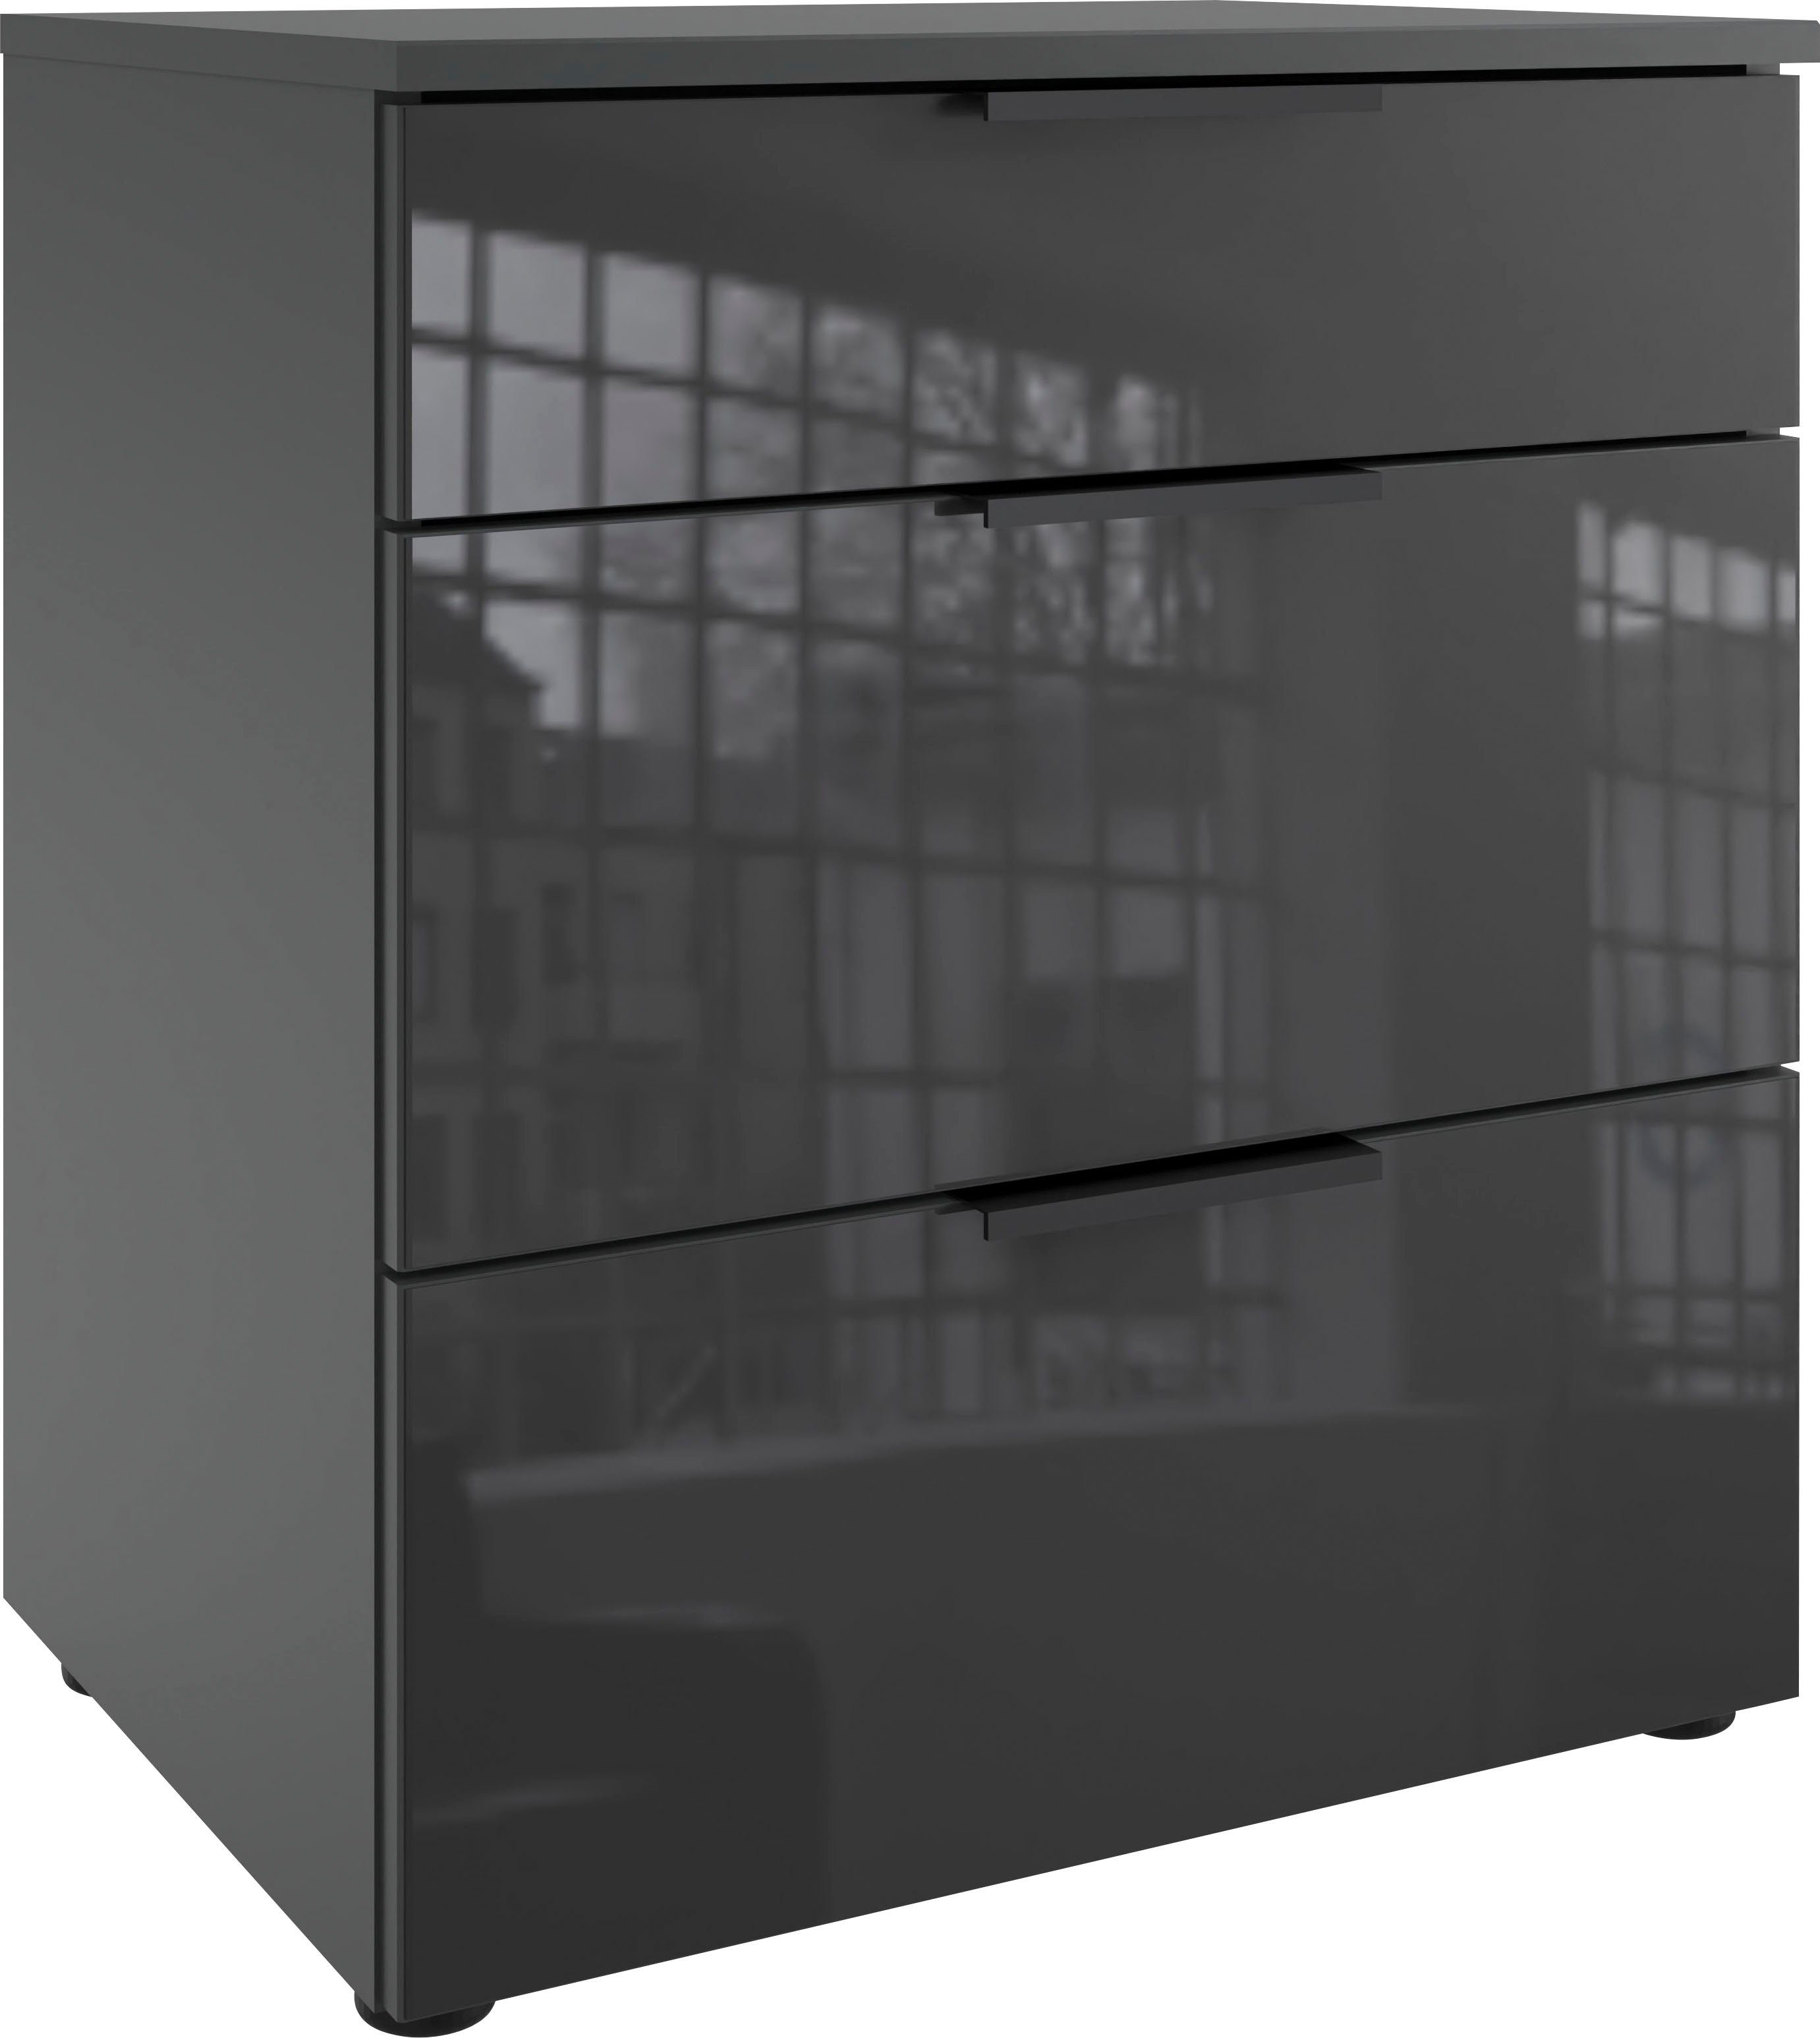 Wimex Nachtkastje Level36 black C by fresh to go met glazen elementen aan de voorkant, soft-close functie, 54 cm breed